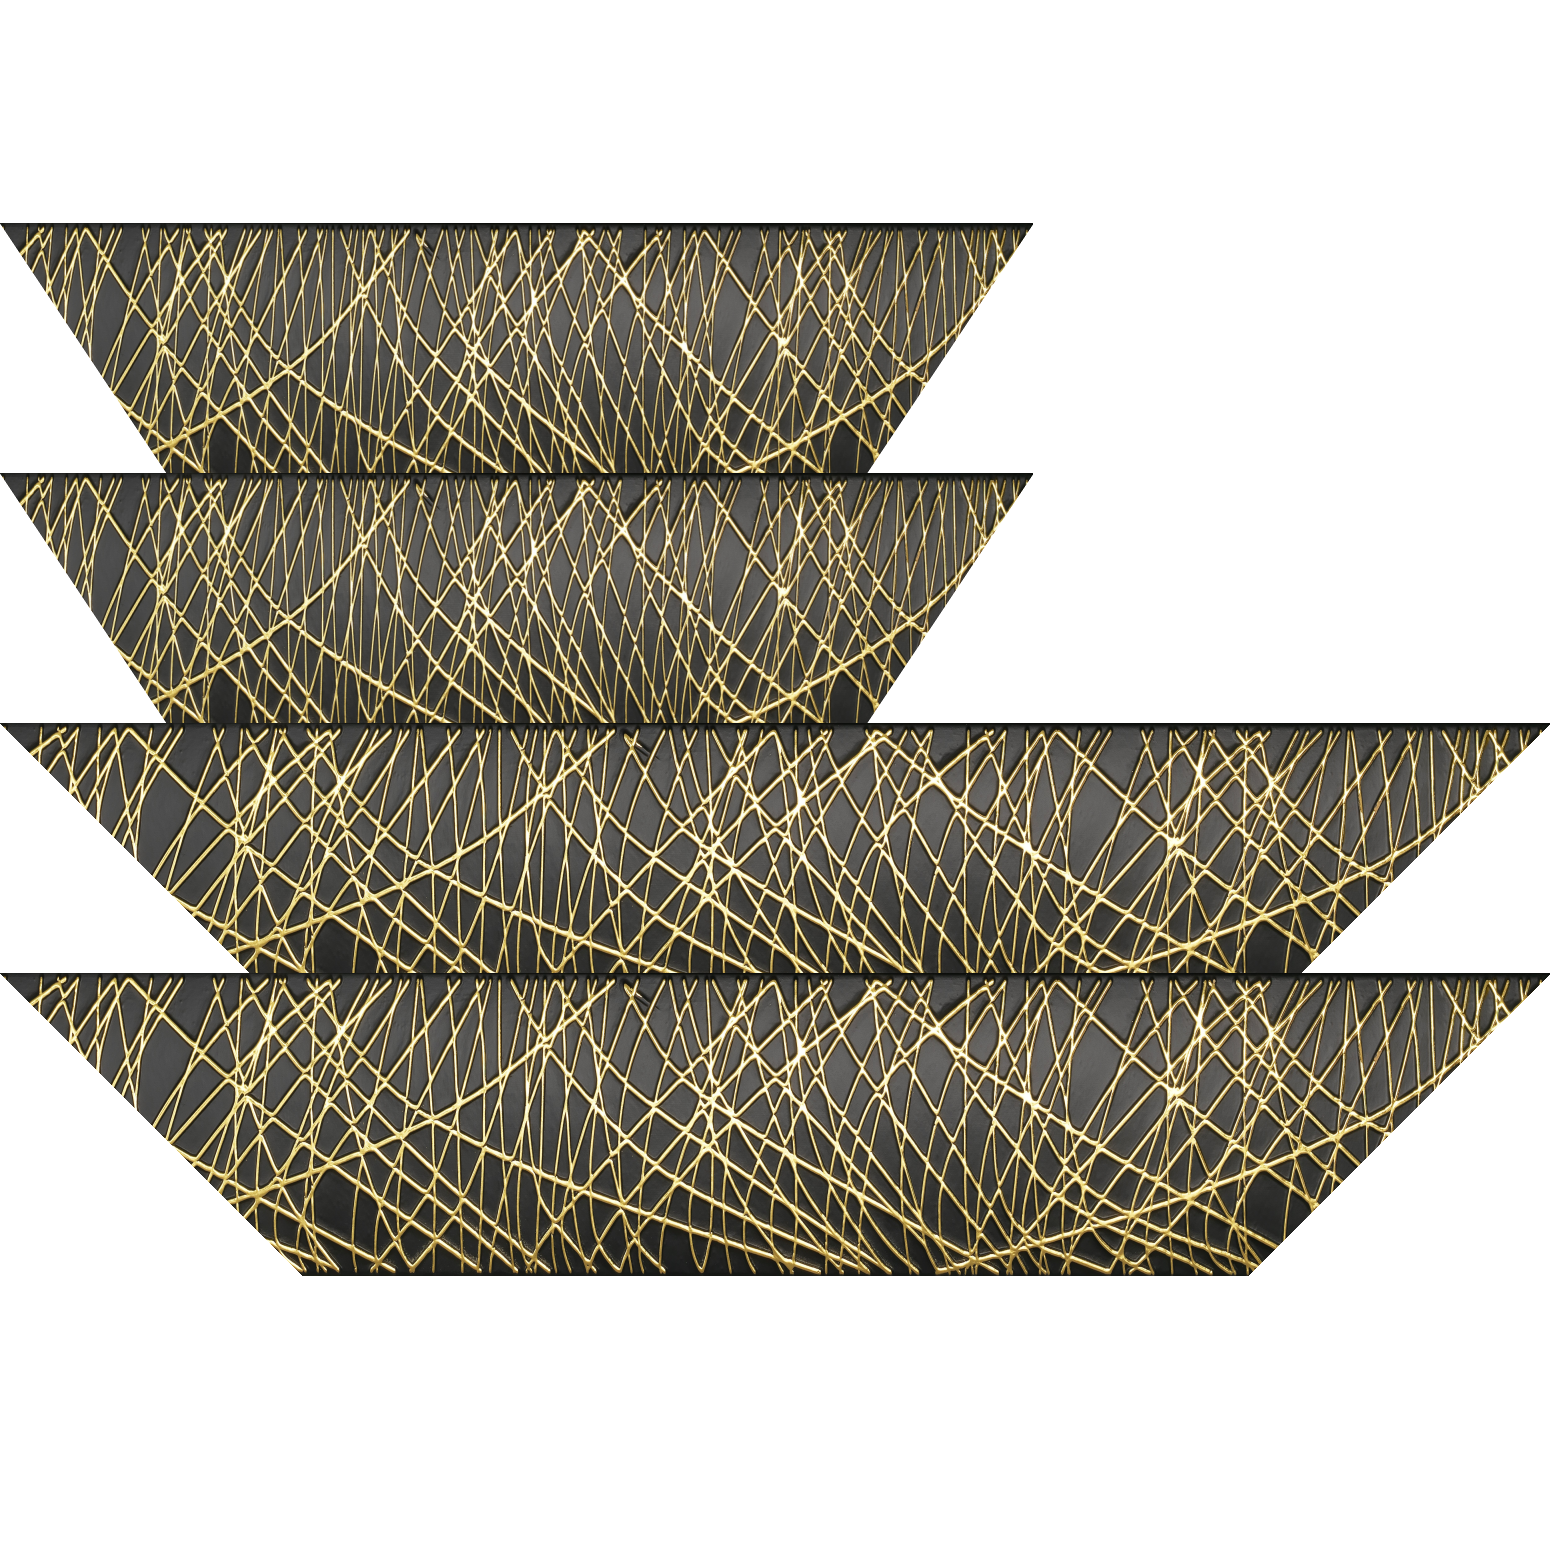 Baguette bois profil arrondi méplat largeur 9.9cm couleur noir satiné trait or en relief - 35x24